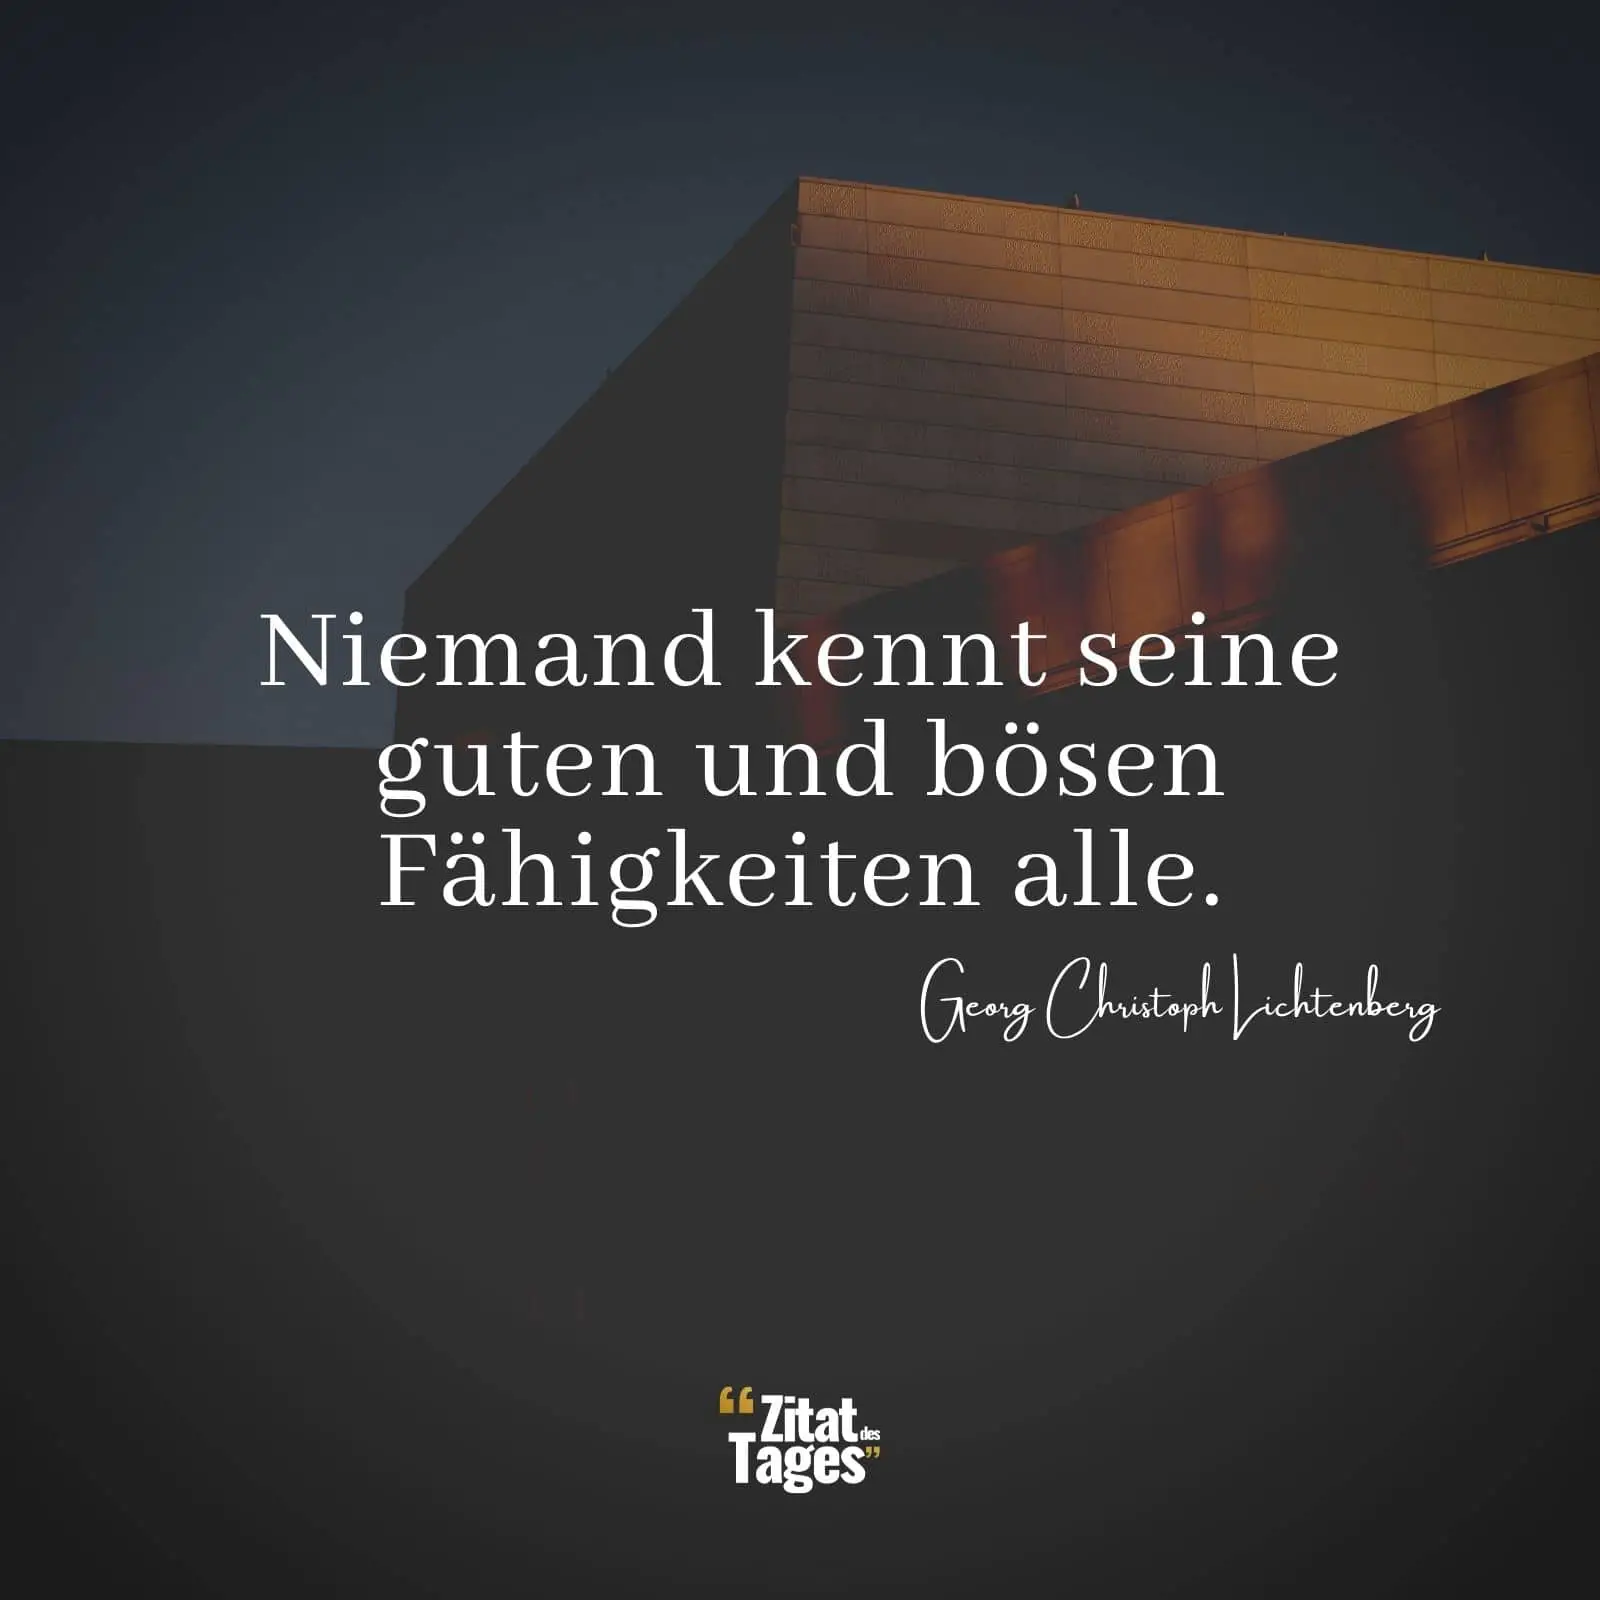 Niemand kennt seine guten und bösen Fähigkeiten alle. - Georg Christoph Lichtenberg